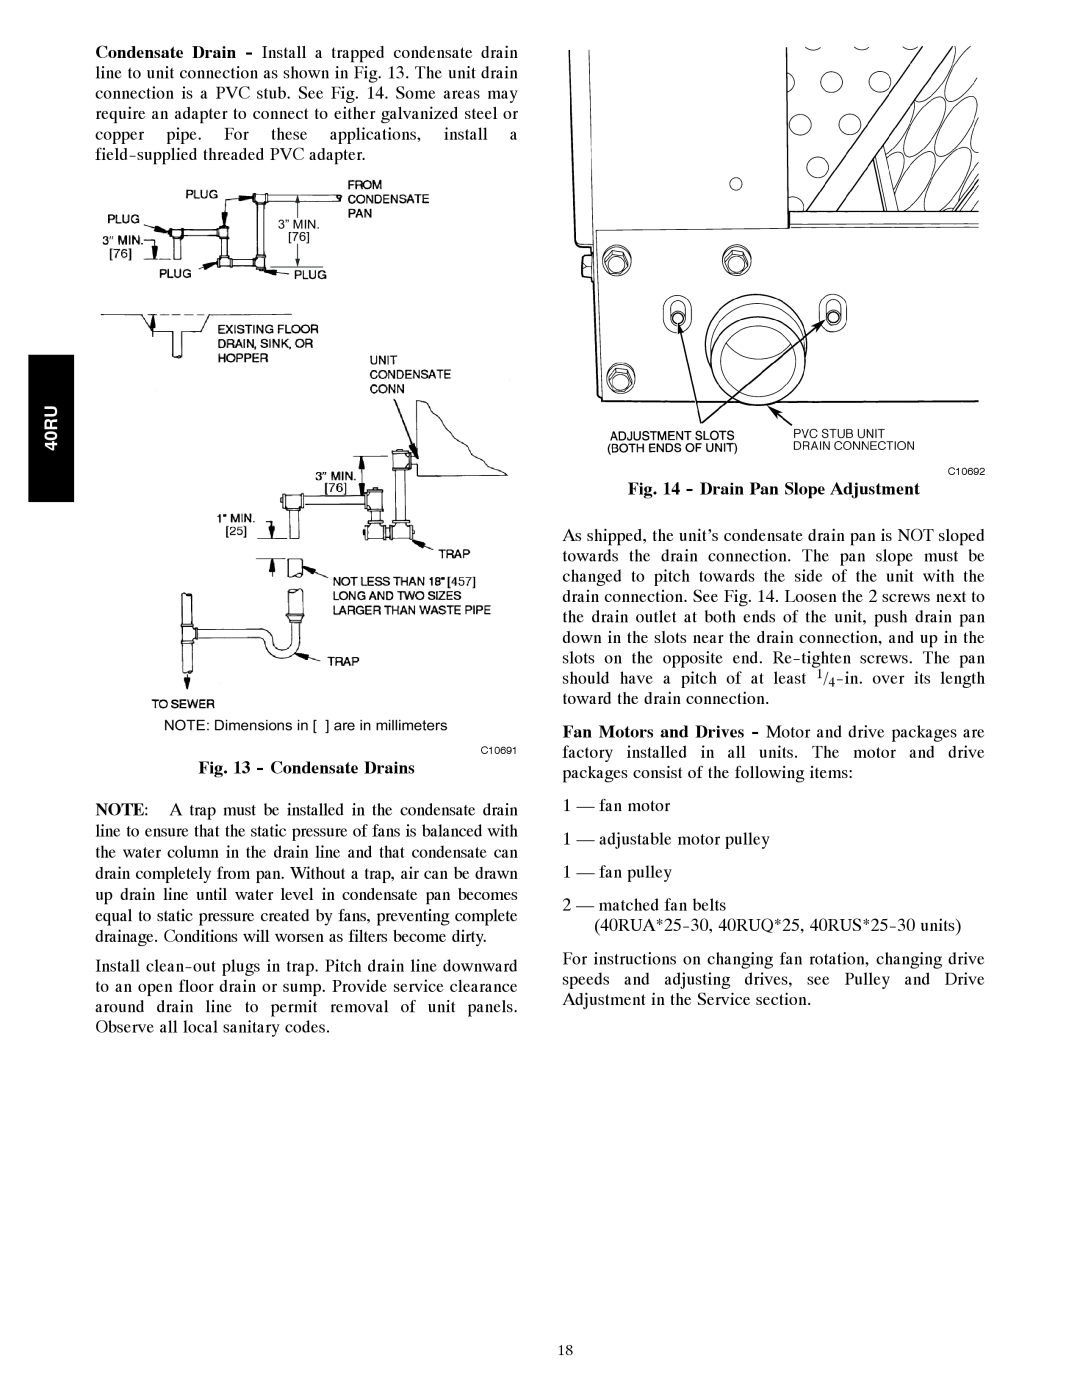 Carrier 40RU manual Condensate Drains, Drain Pan Slope Adjustment 